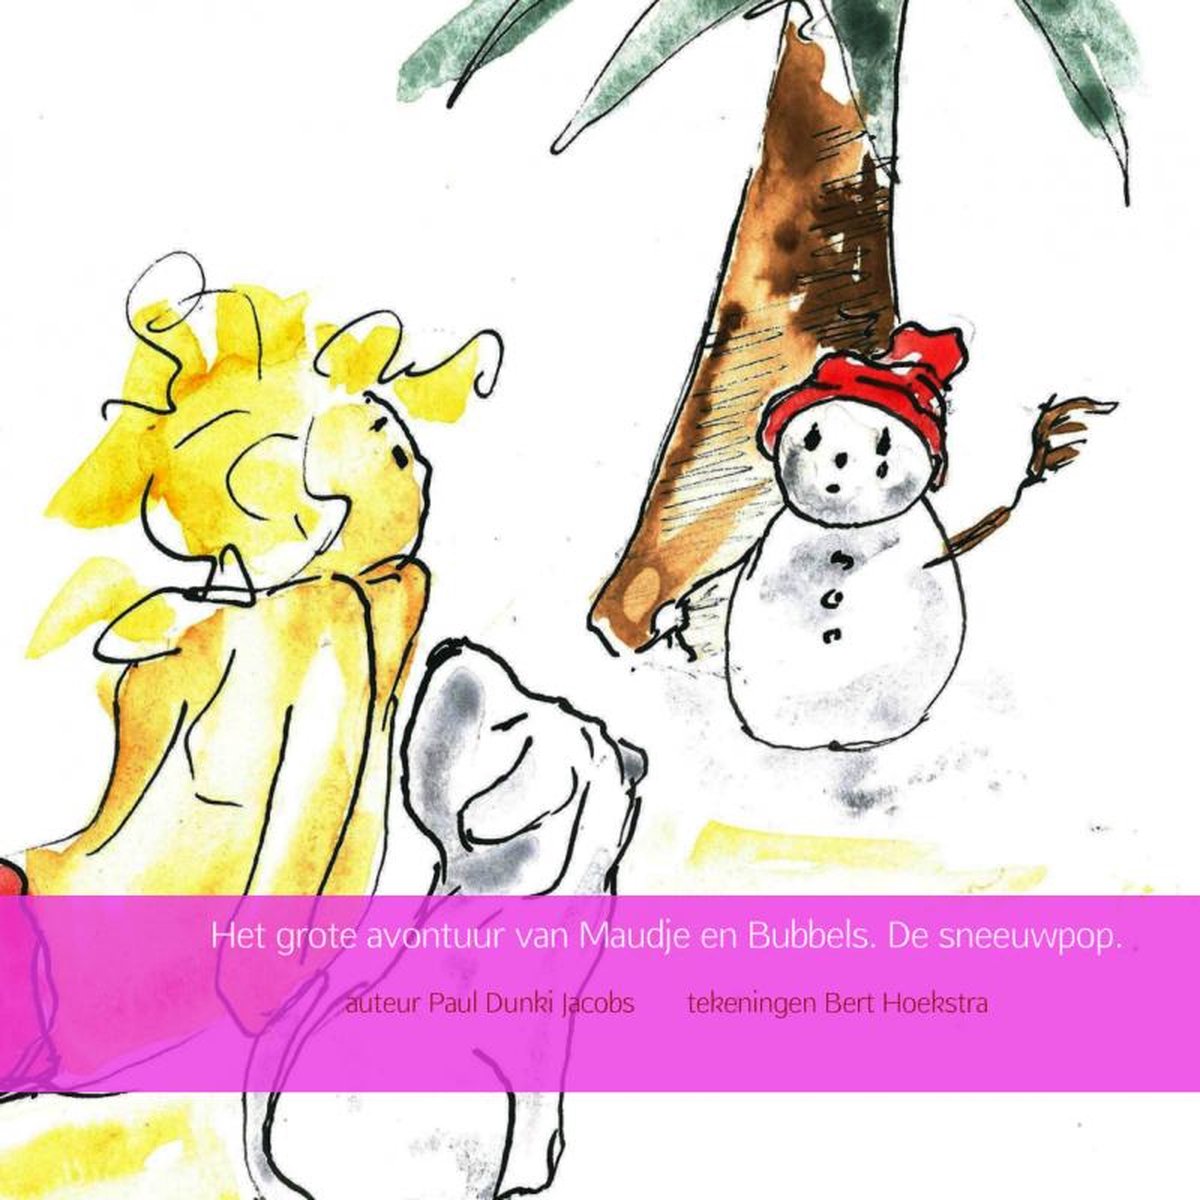 Het grote avontuur van Maudje en Bubbels. De sneeuwpop.